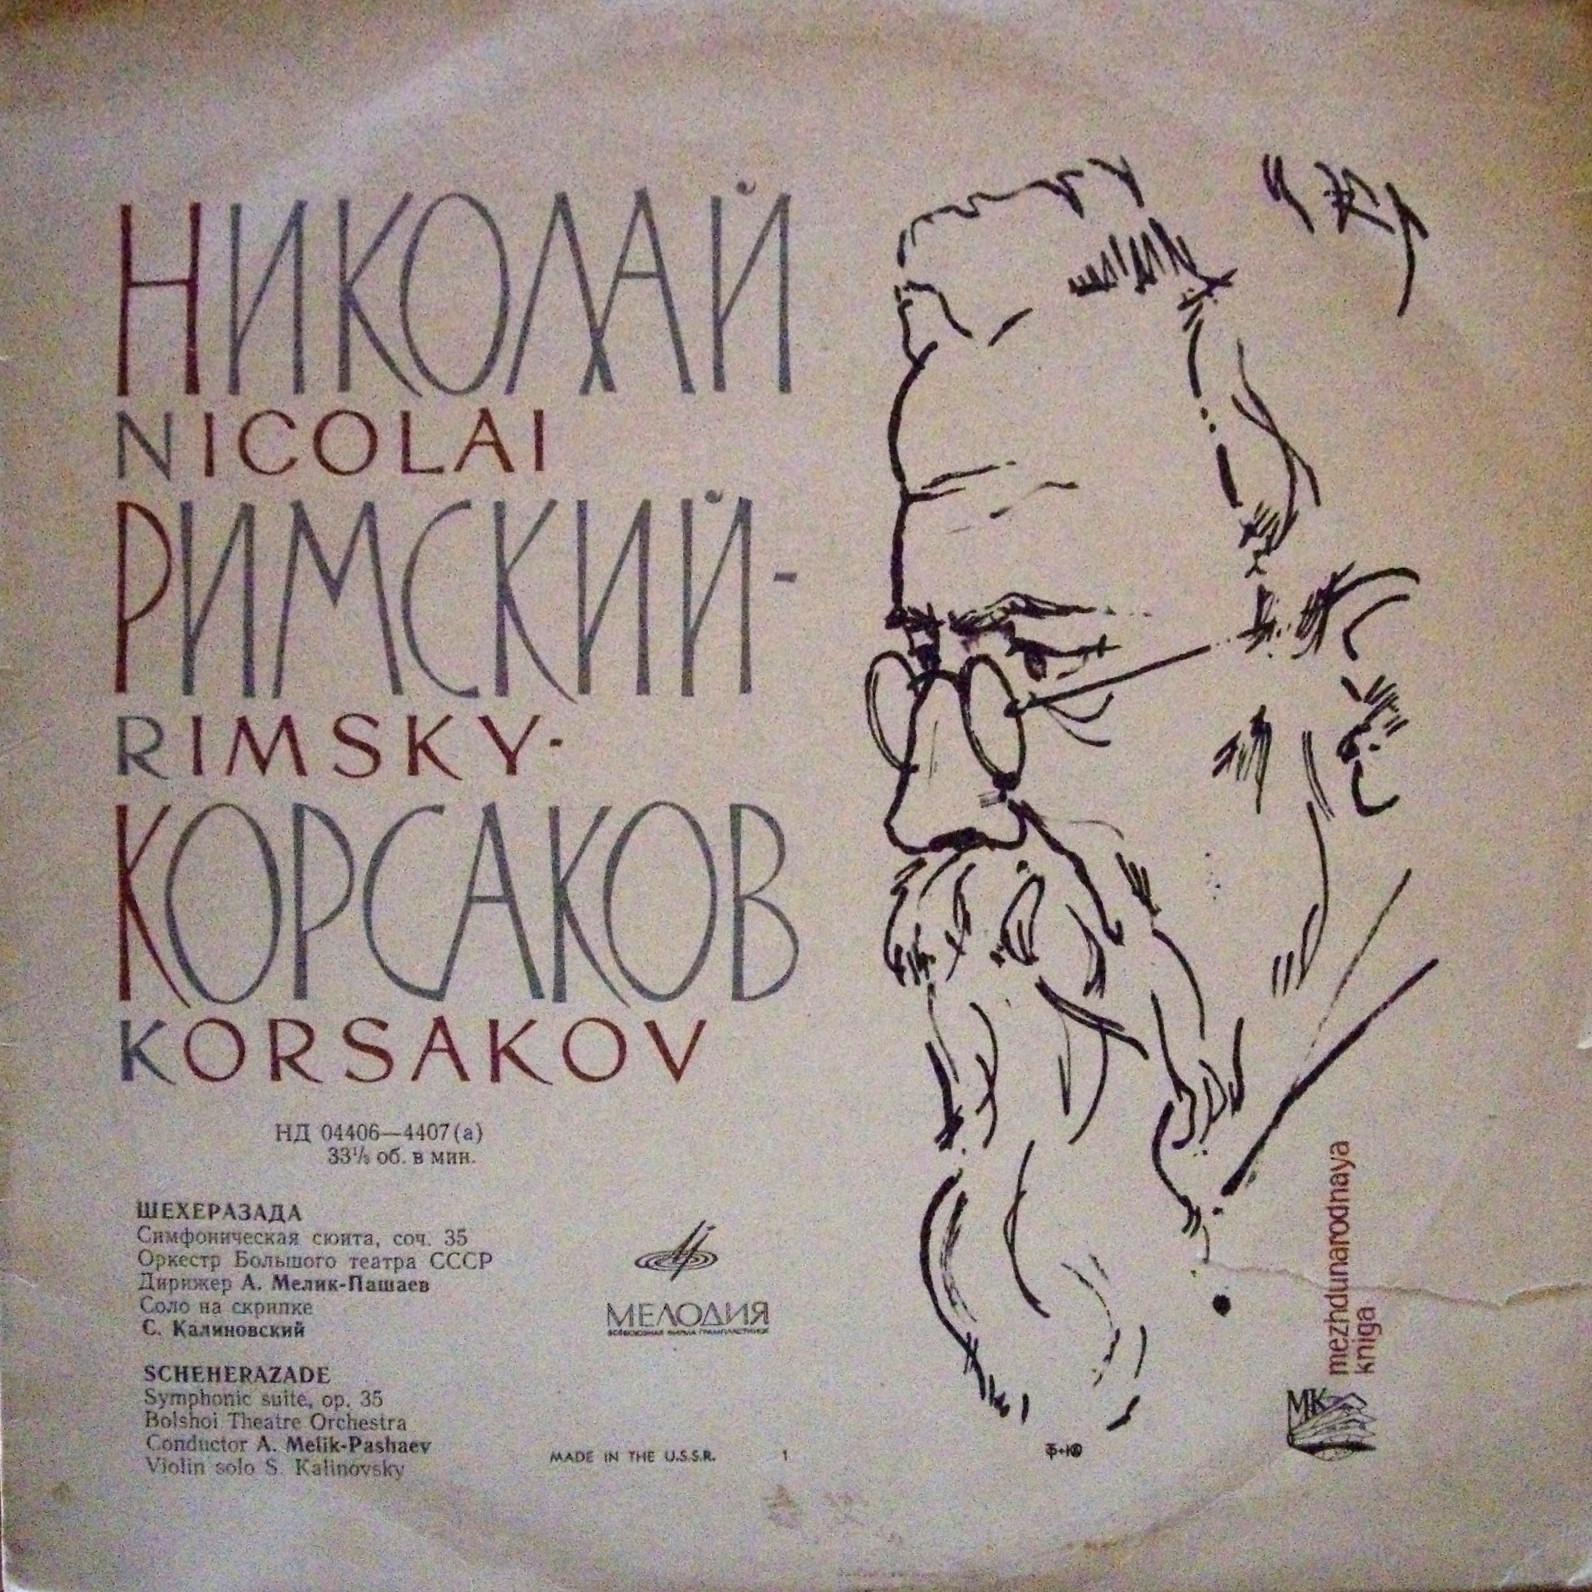 Н. Римский-Корсаков. «Шехеразада», симфоническая сюита, соч. 35